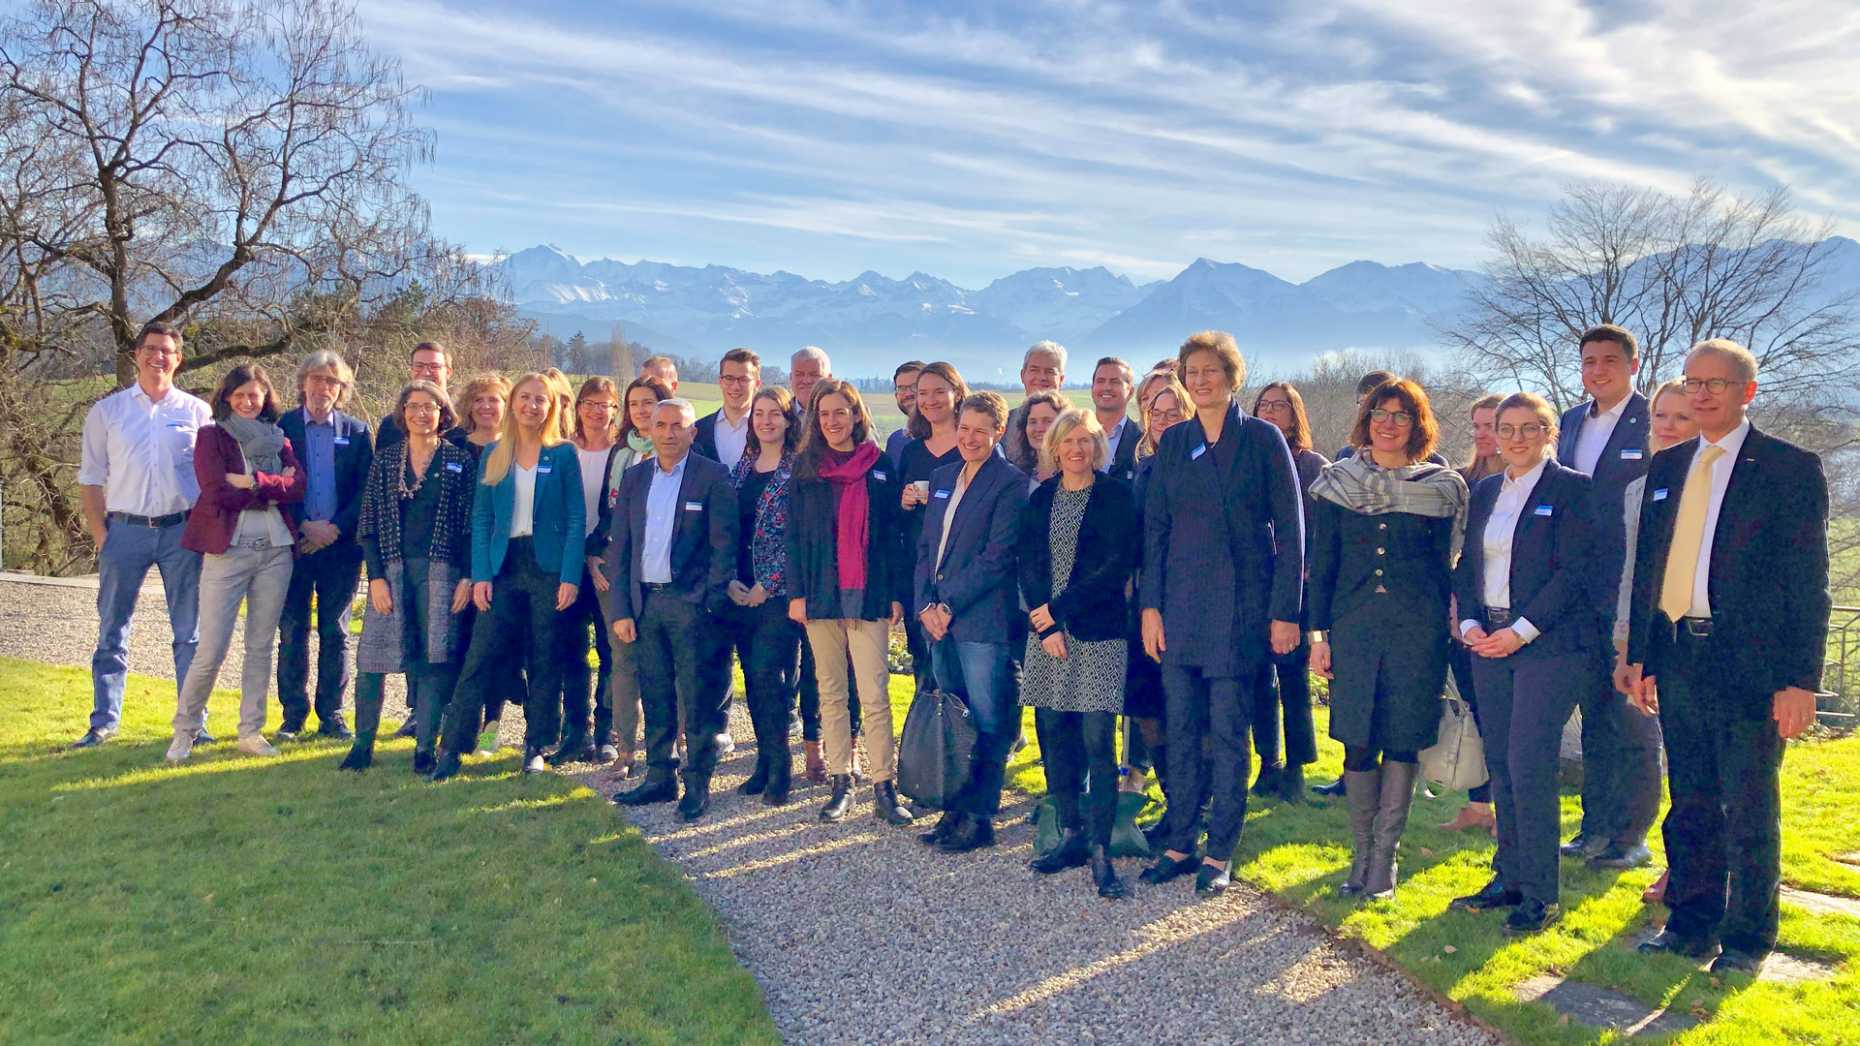 Gruppenbild vor Bergkulisse: Neugewählte Parlamentarierinnen und Parlamentarier besuchen den ETH-Einführungsanlass (Bild: ETH Zürich)